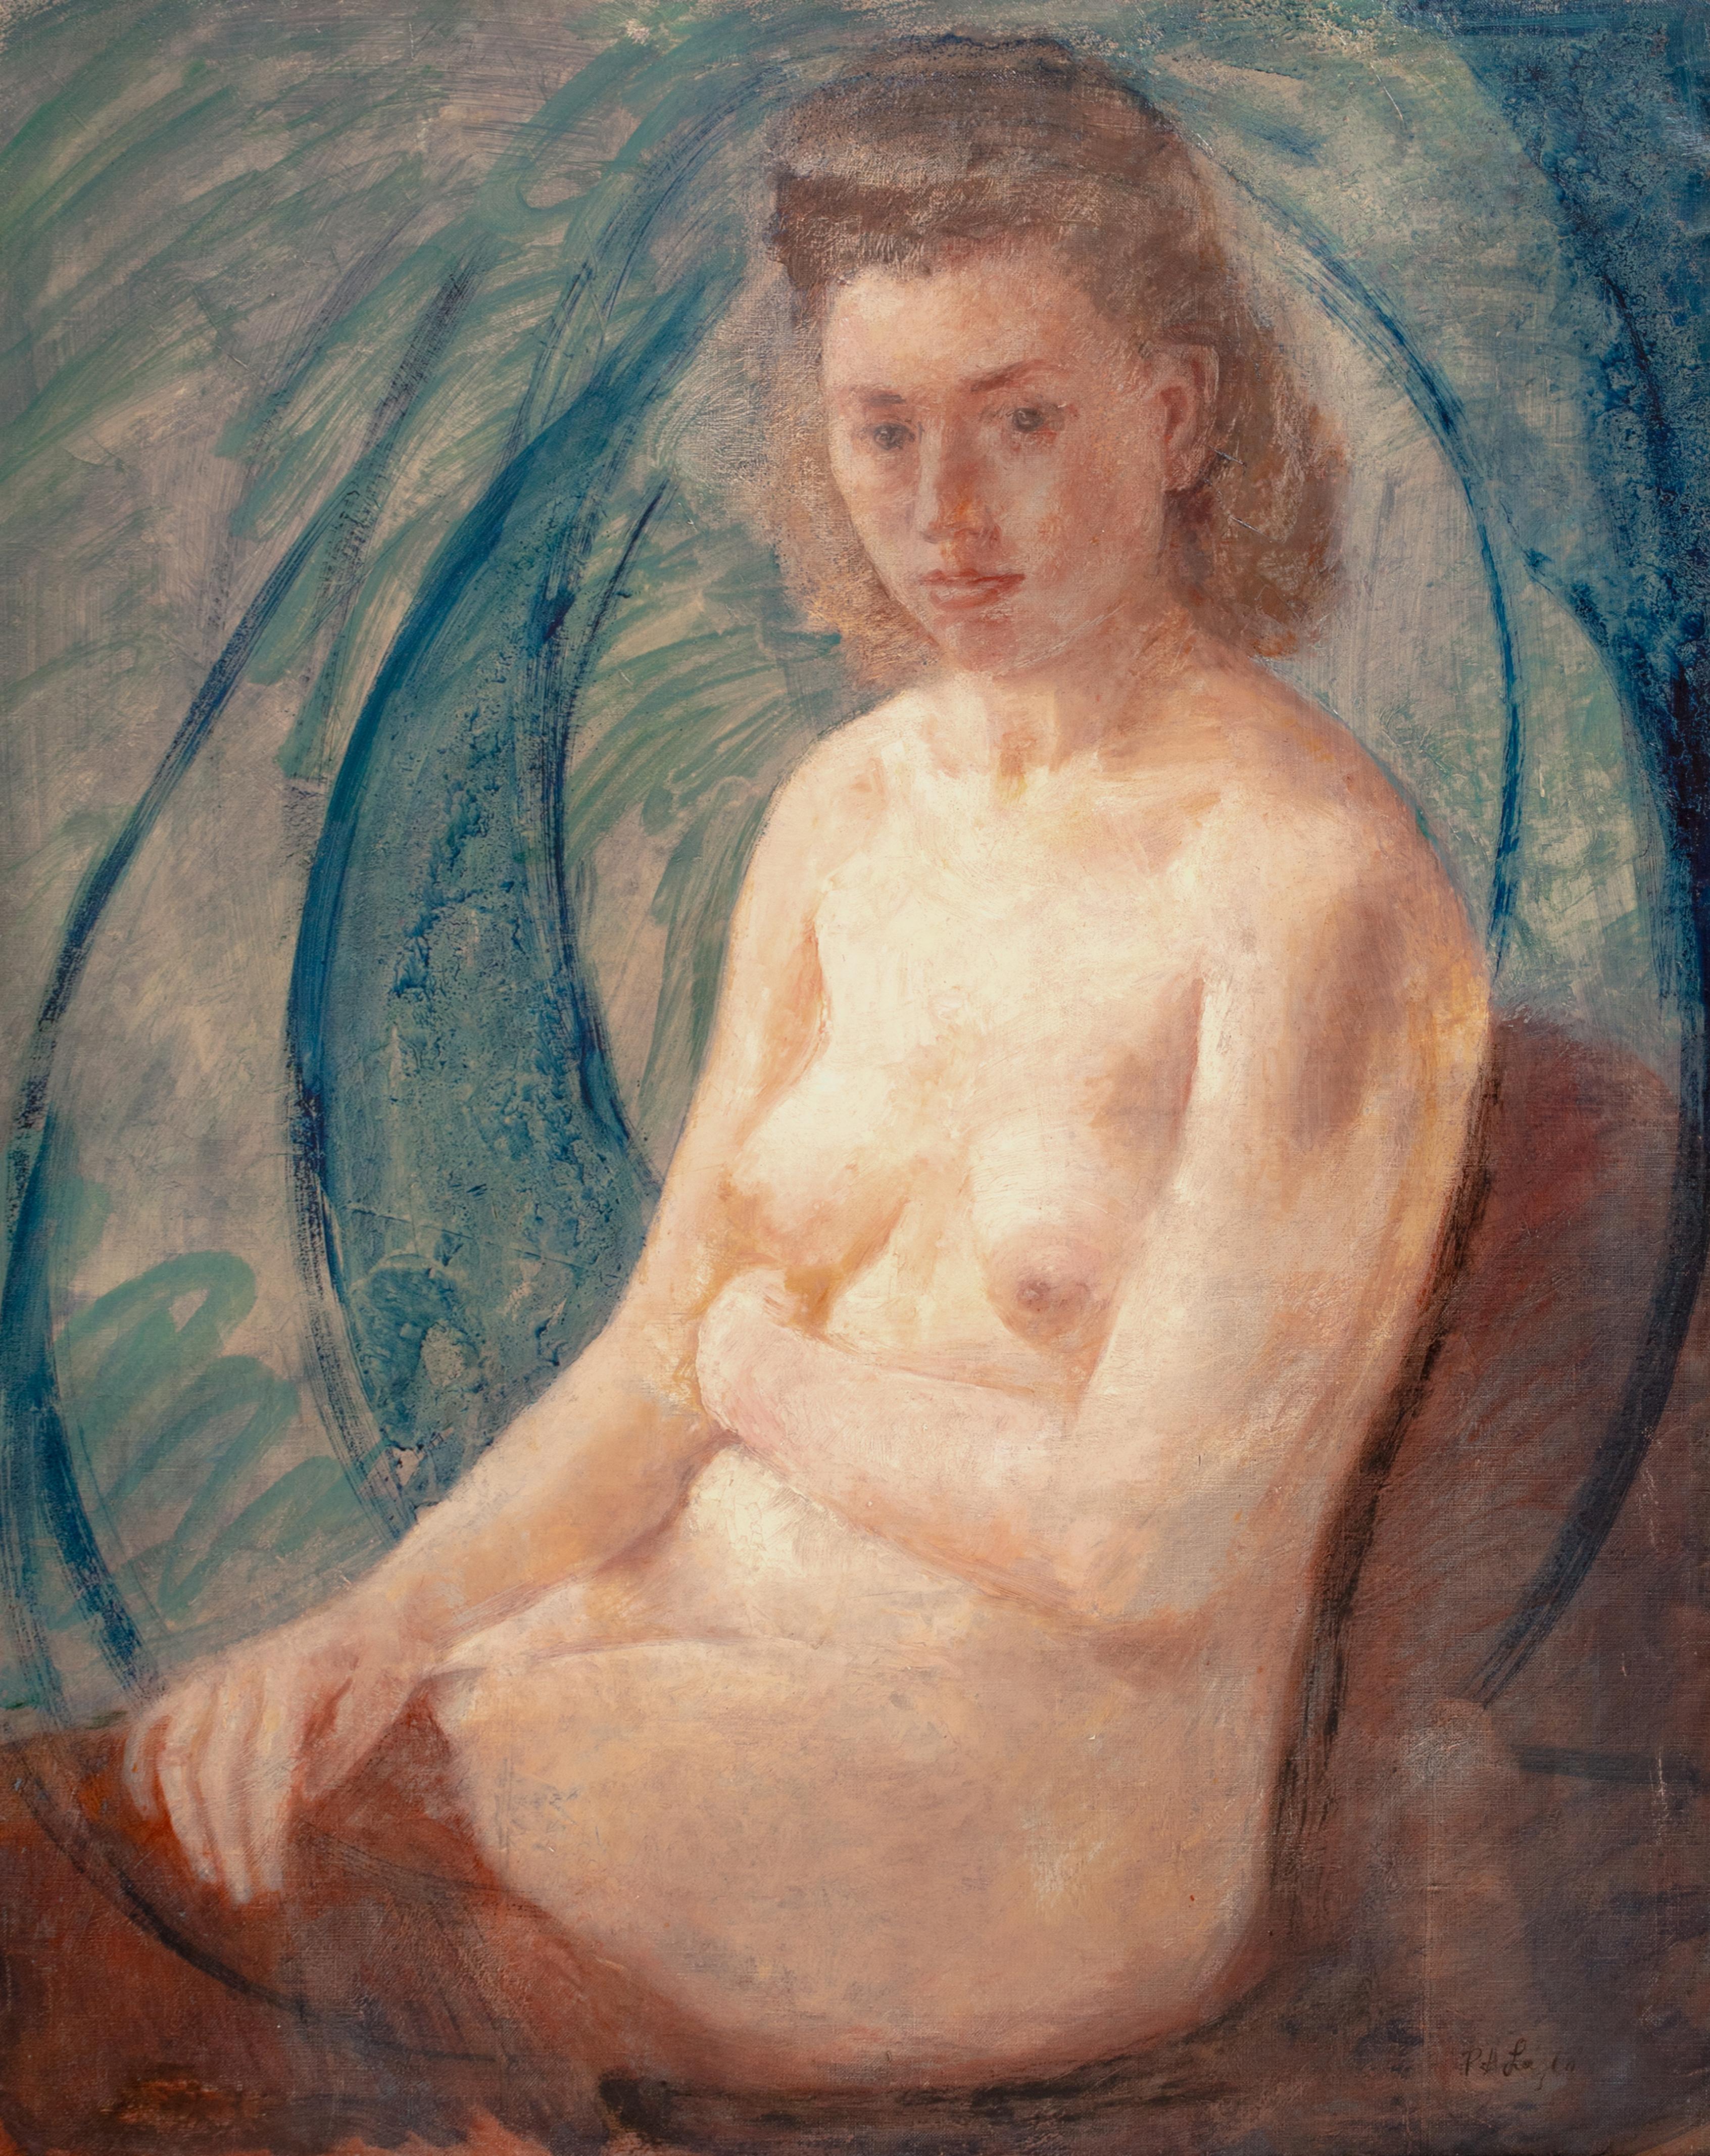 Portrait d'une femme nue, vers 1900

par Philips de László (1869-1937) vendu à 280 000 $.

Grand portrait anglais du XIXe siècle d'une femme nue assise, huile sur toile de Philip de Laszlo. Excellente qualité et état de conservation. Étude de trois